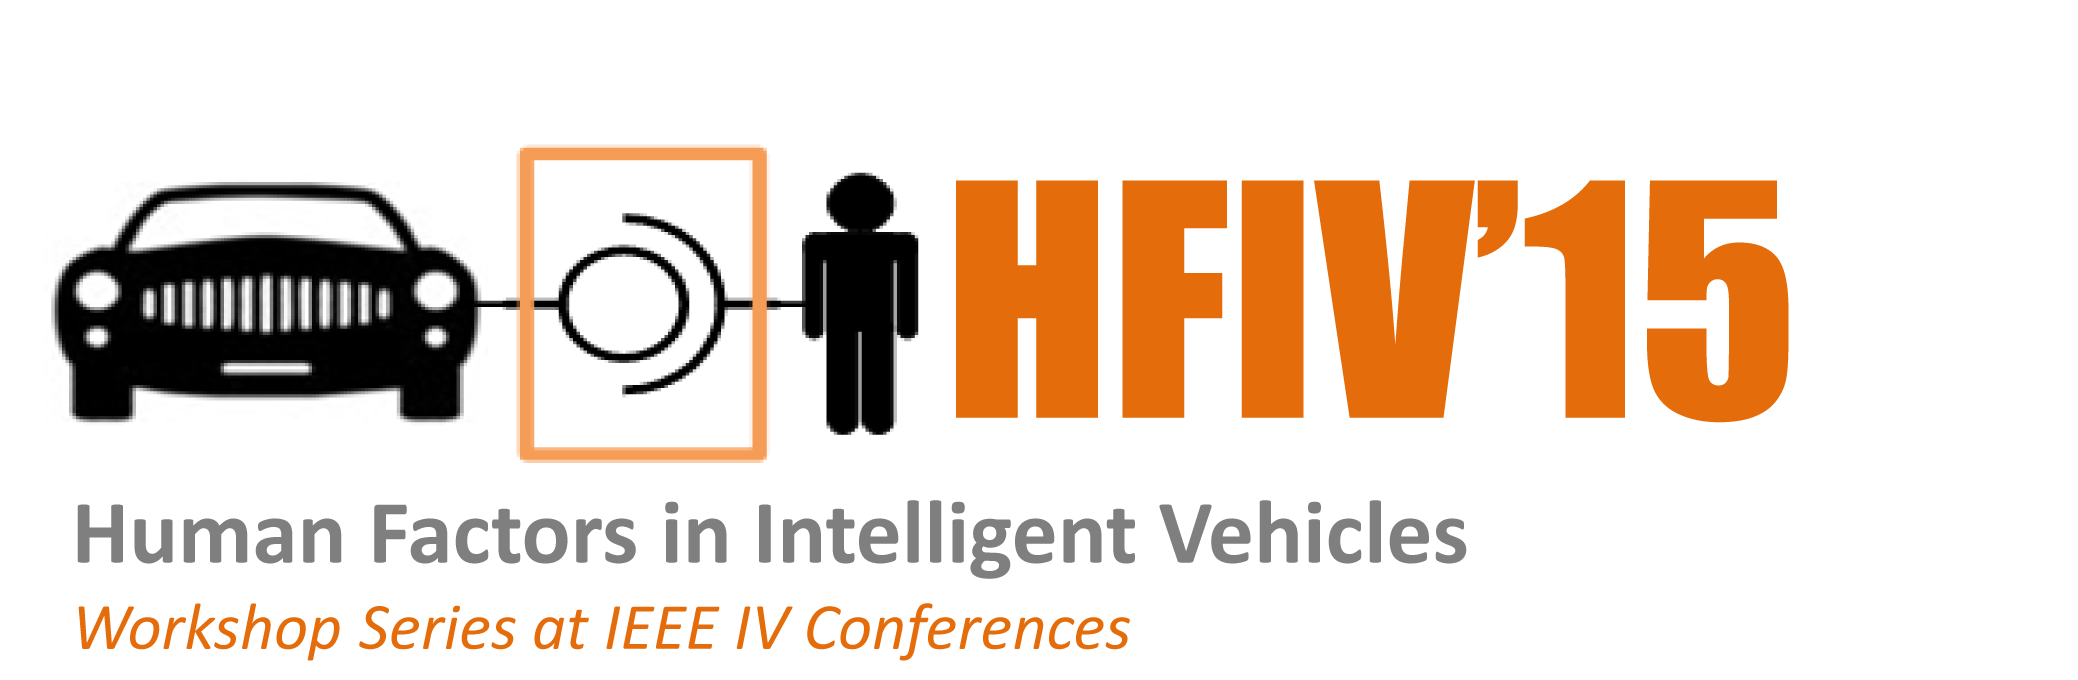 HFIV15 logo